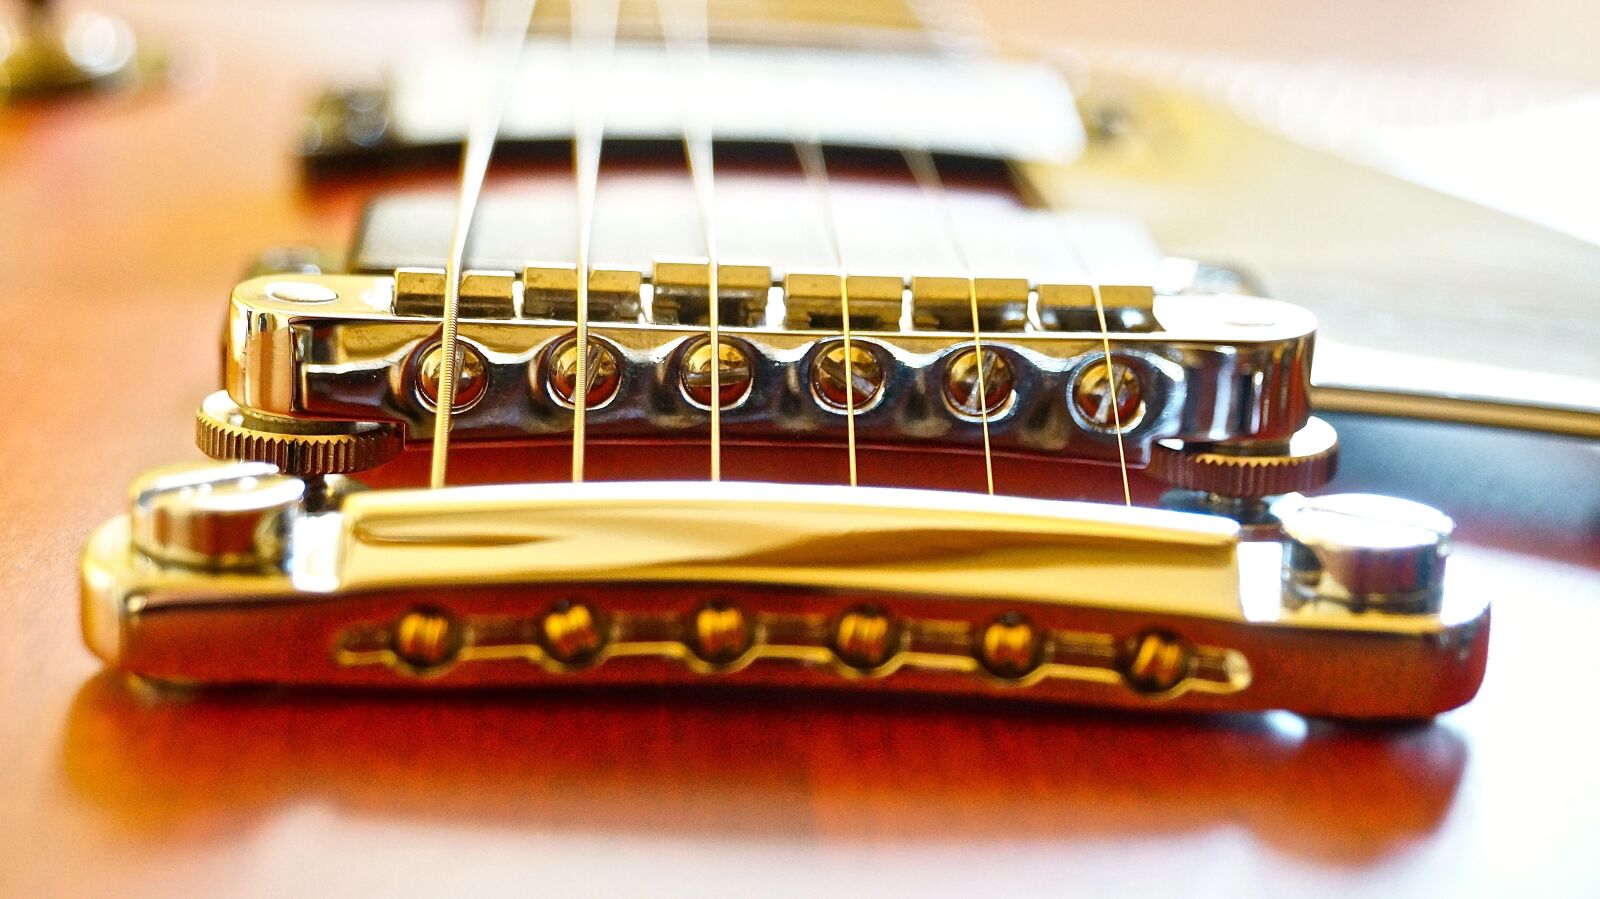 Sony NEX-VG30E sample photo. Gibson, easel, guitar photography